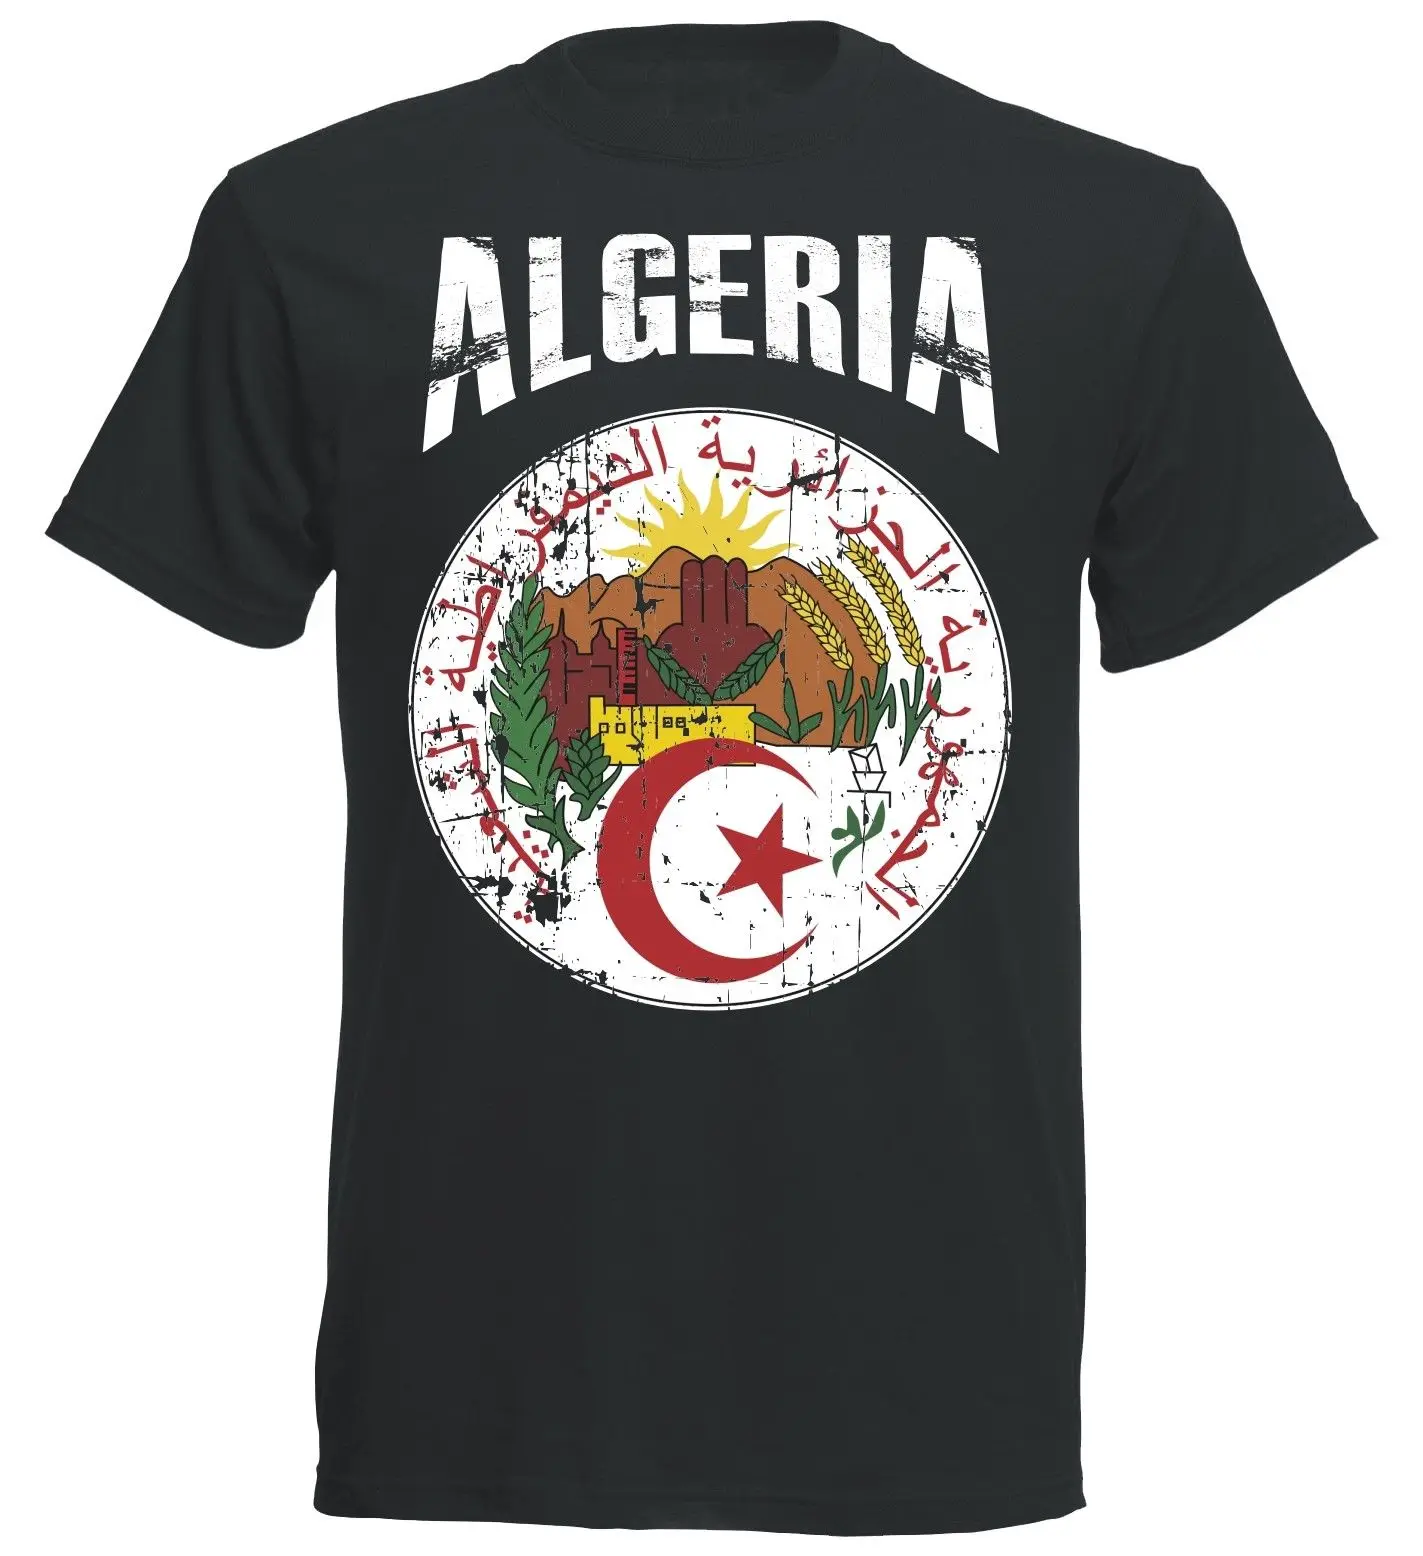 2019 Sıcak Satış Yaz Moda Yeni %100 % Pamuk Cezayir T-Shirt Cezayir erkek Futbolcu Vintage Tee Gömlek Erkekler ıçin